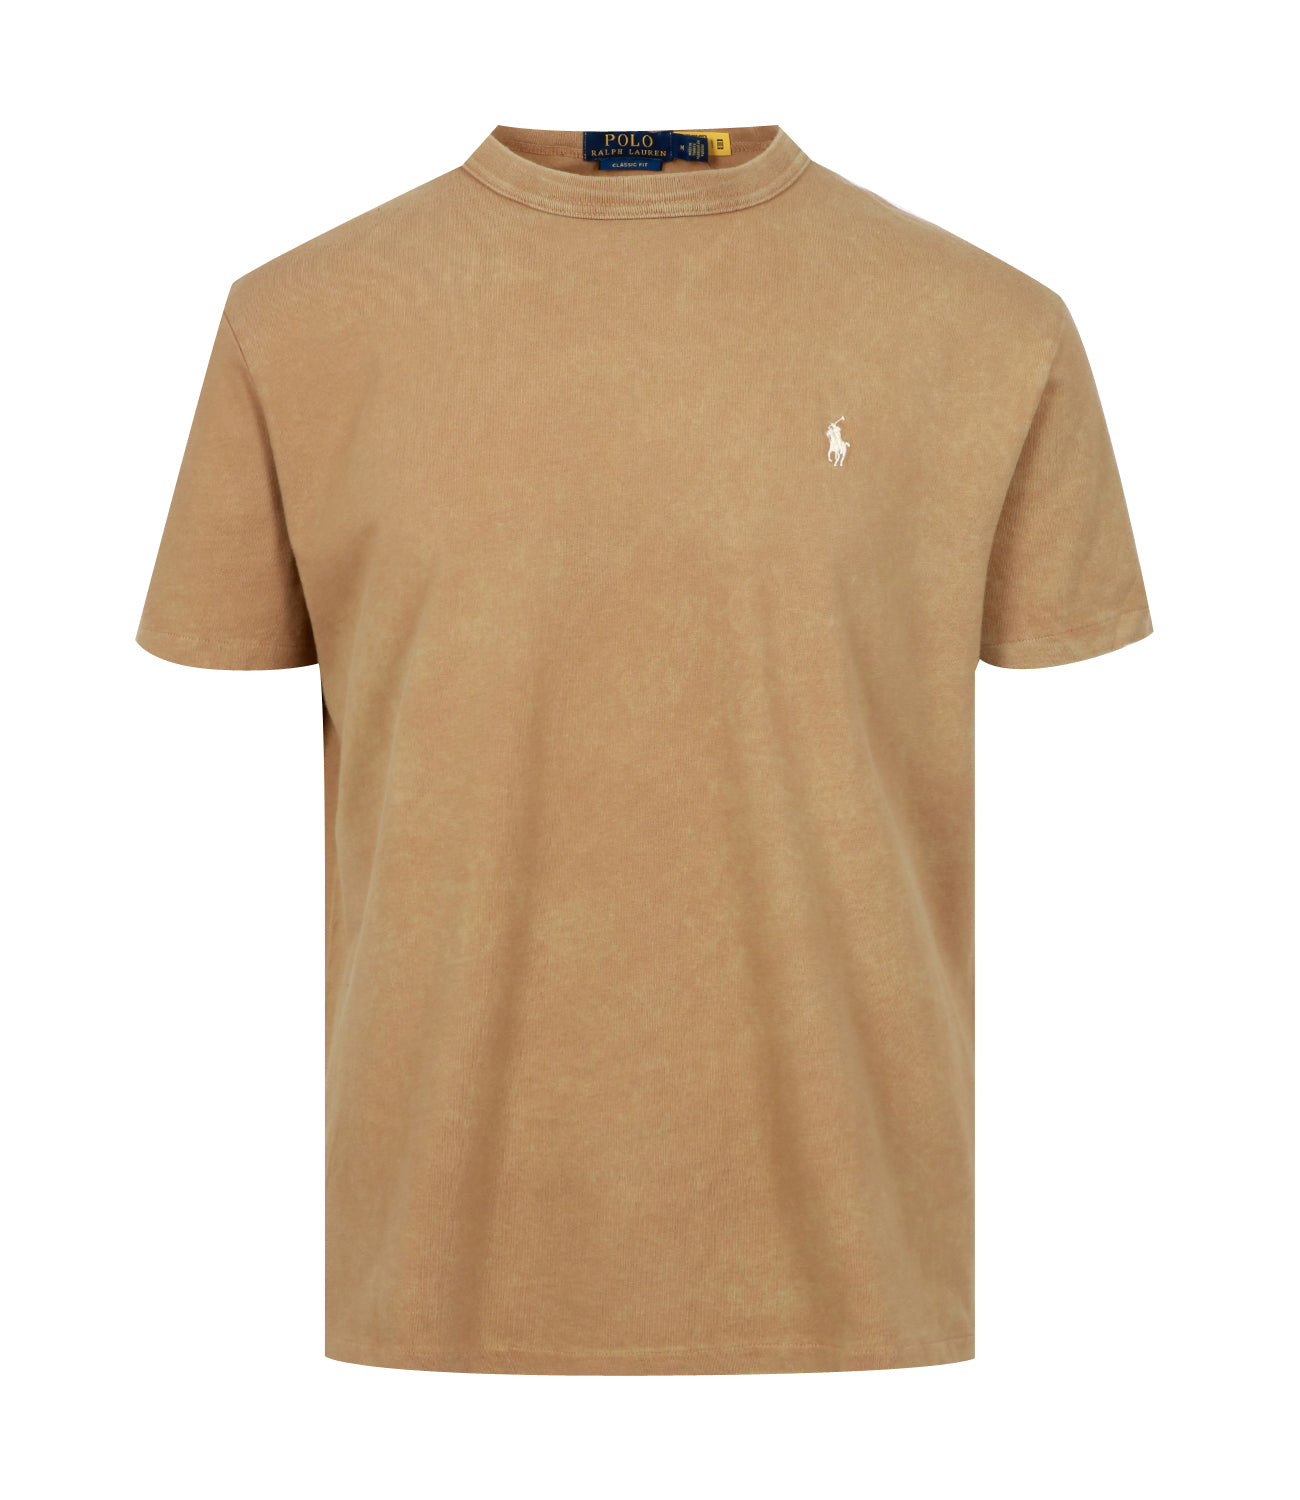 Polo Ralph Lauren | T-Shirt Beige Tan